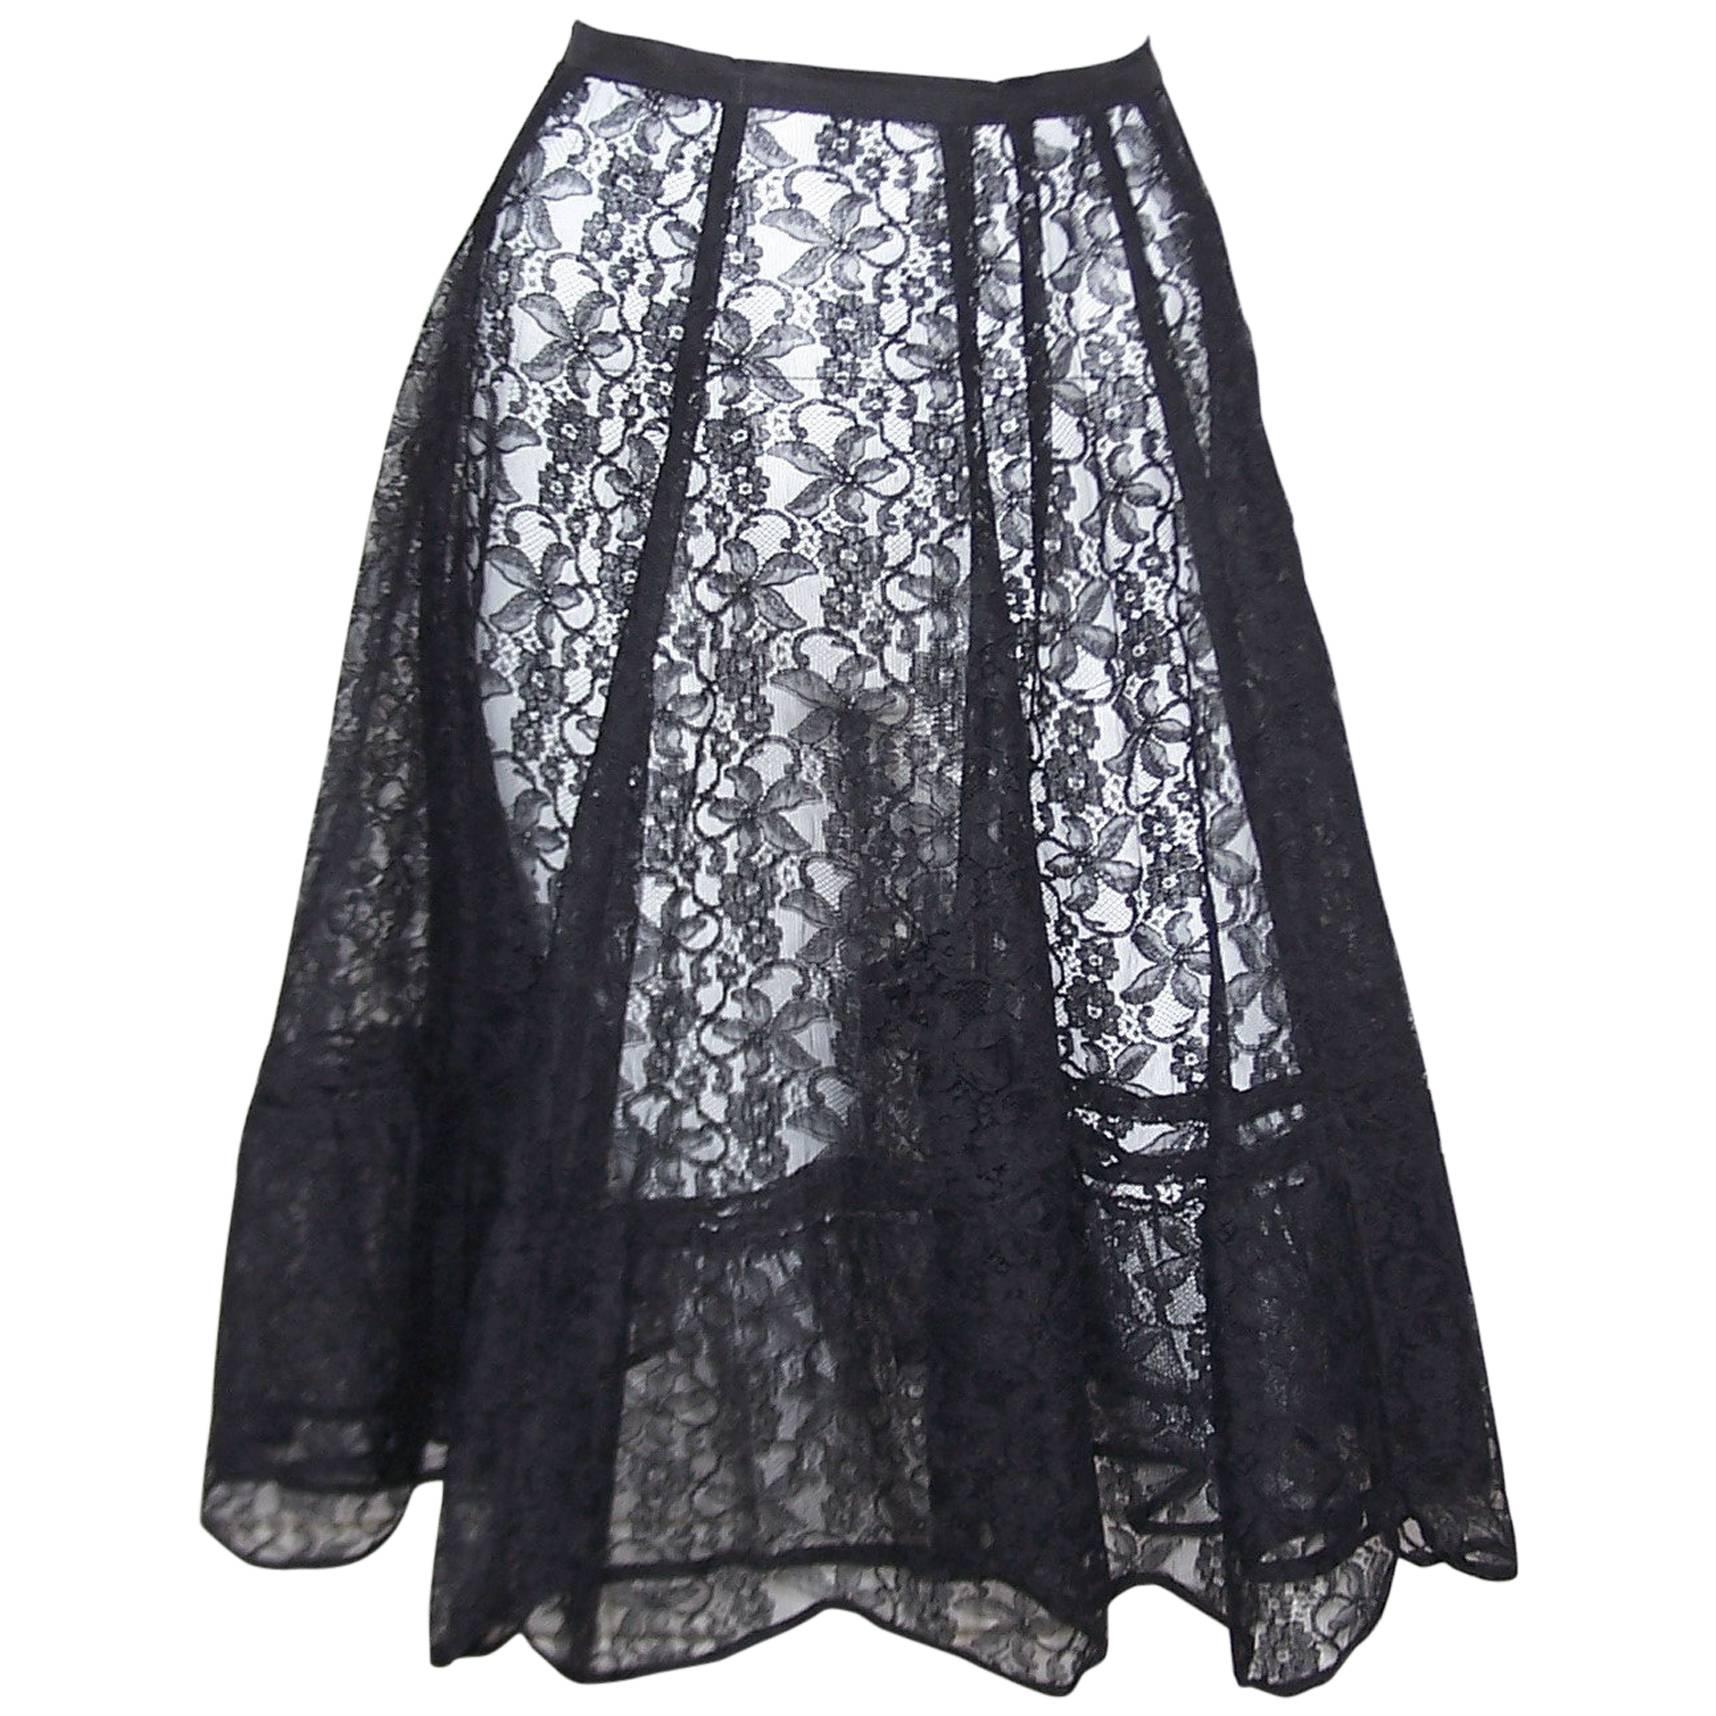 Seductive 1950's Black Lace Crinoline Petticoat Slip